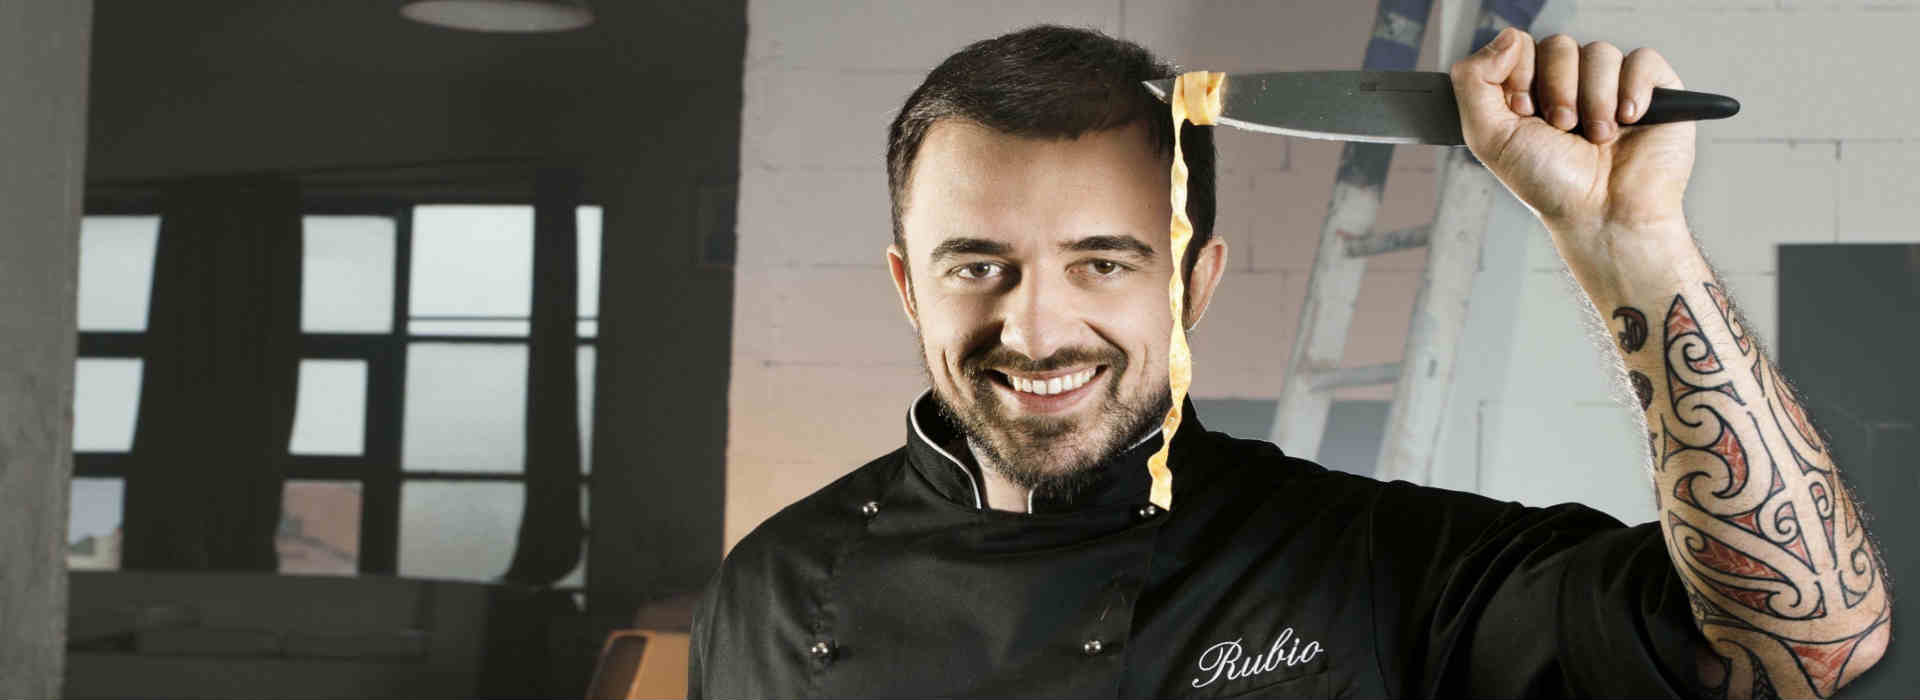 Chef Rubio cancellato anche dalla Rai